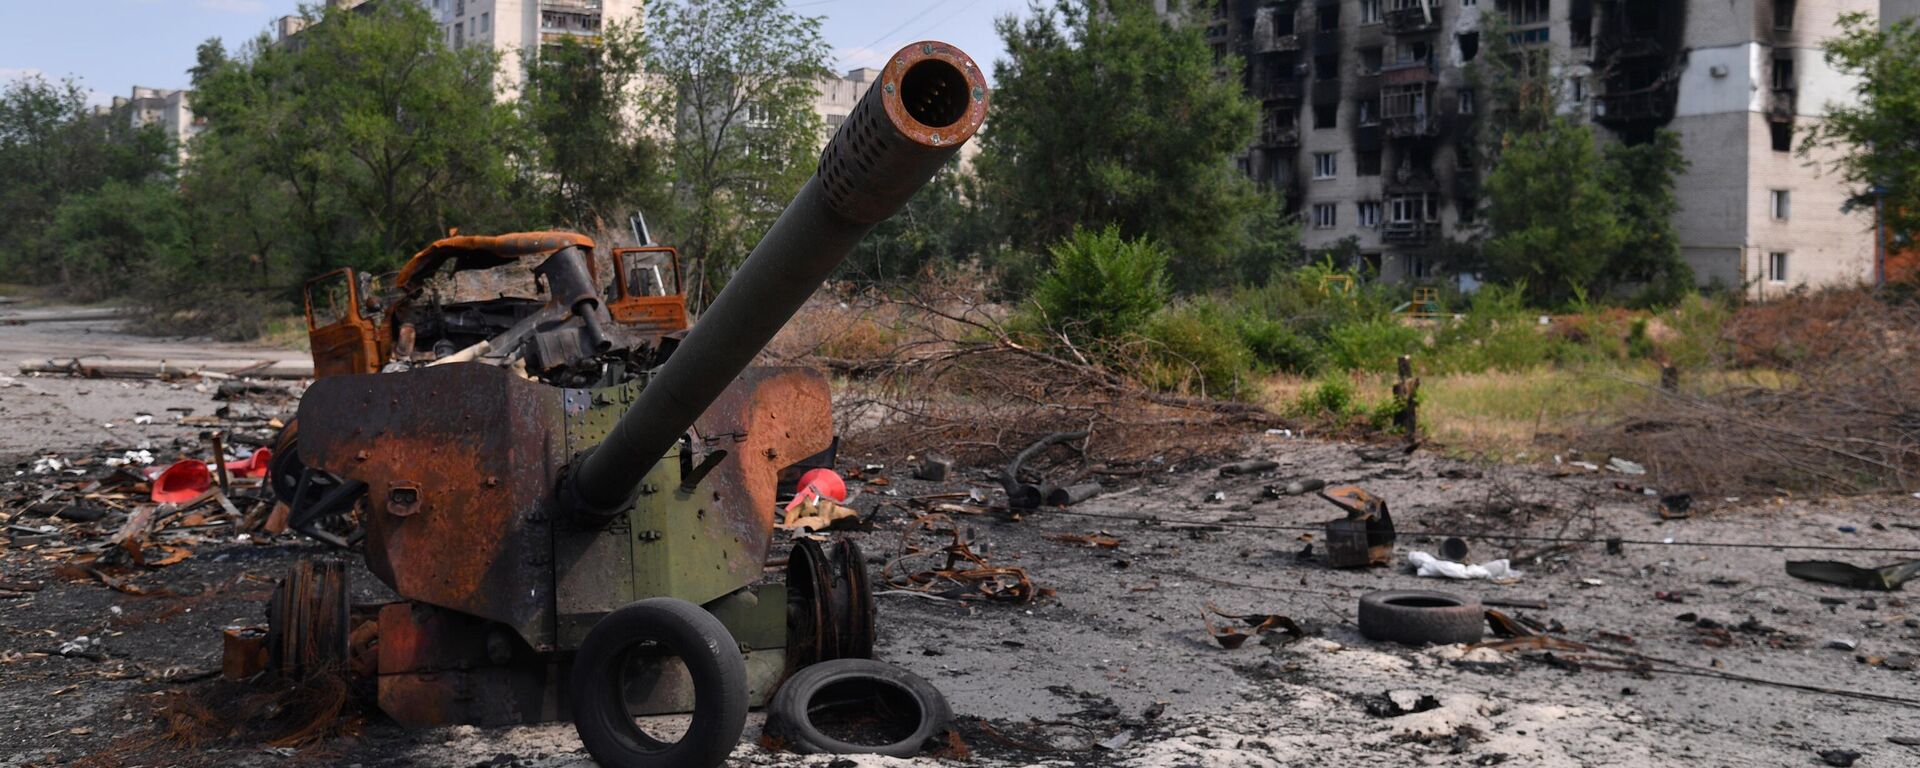 Arma de artilharia das Forças Armadas da Ucrânia destruída em Severodonetsk, no leste ucraniano, 11 de junho de 2022 - Sputnik Brasil, 1920, 11.10.2022